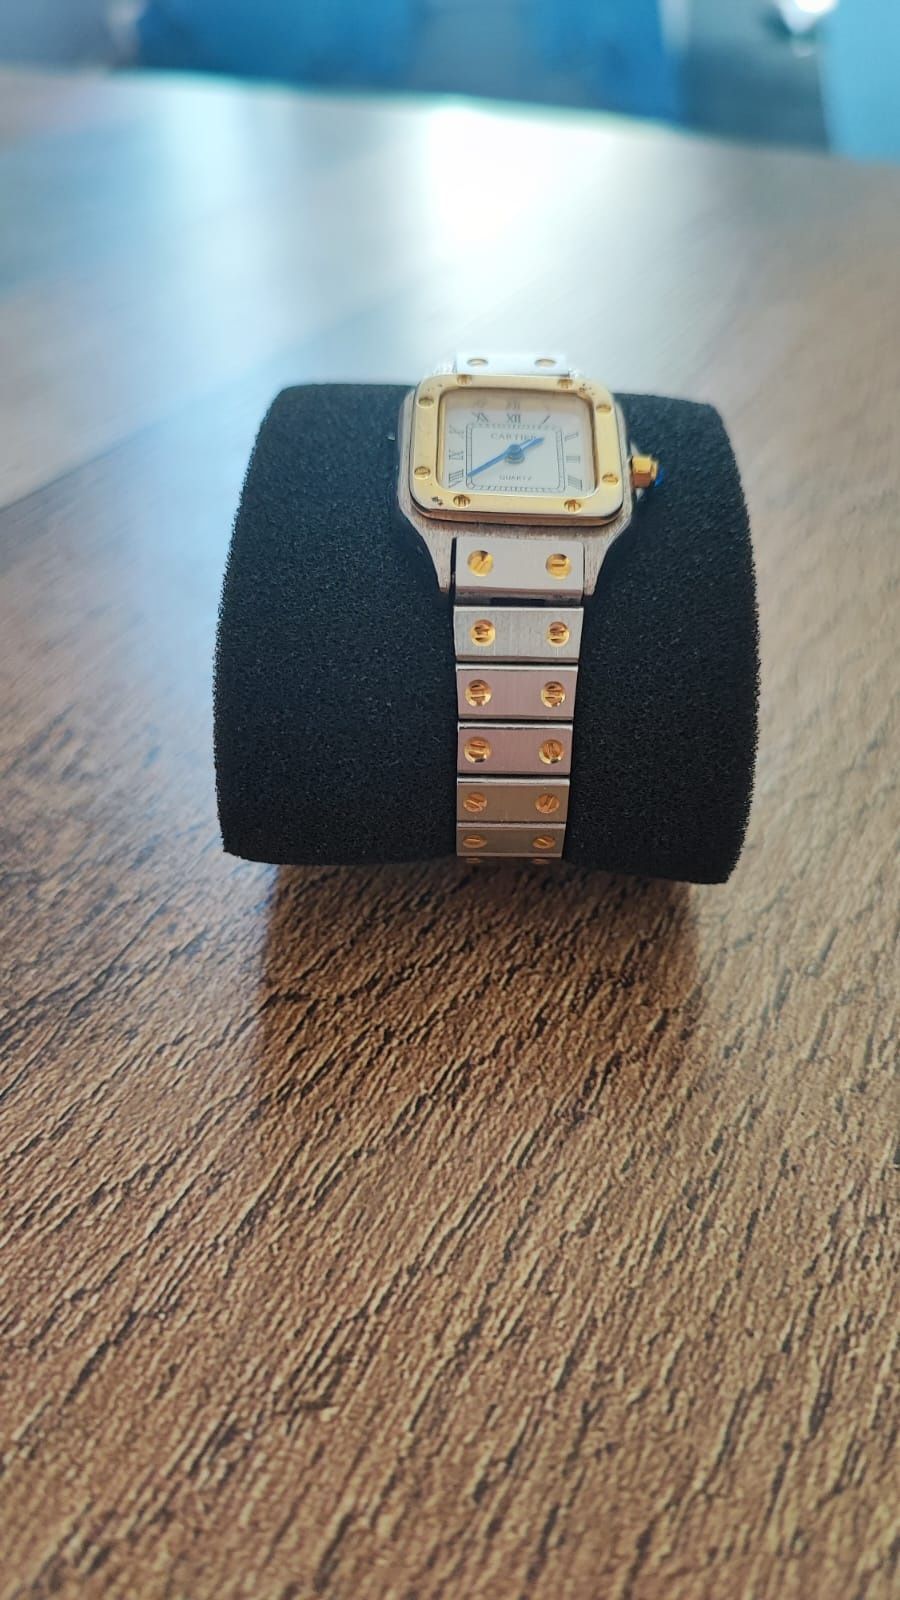 Zegarek na rękę damski kwarcowy stal nierdzewna Cartier 593120 Japan